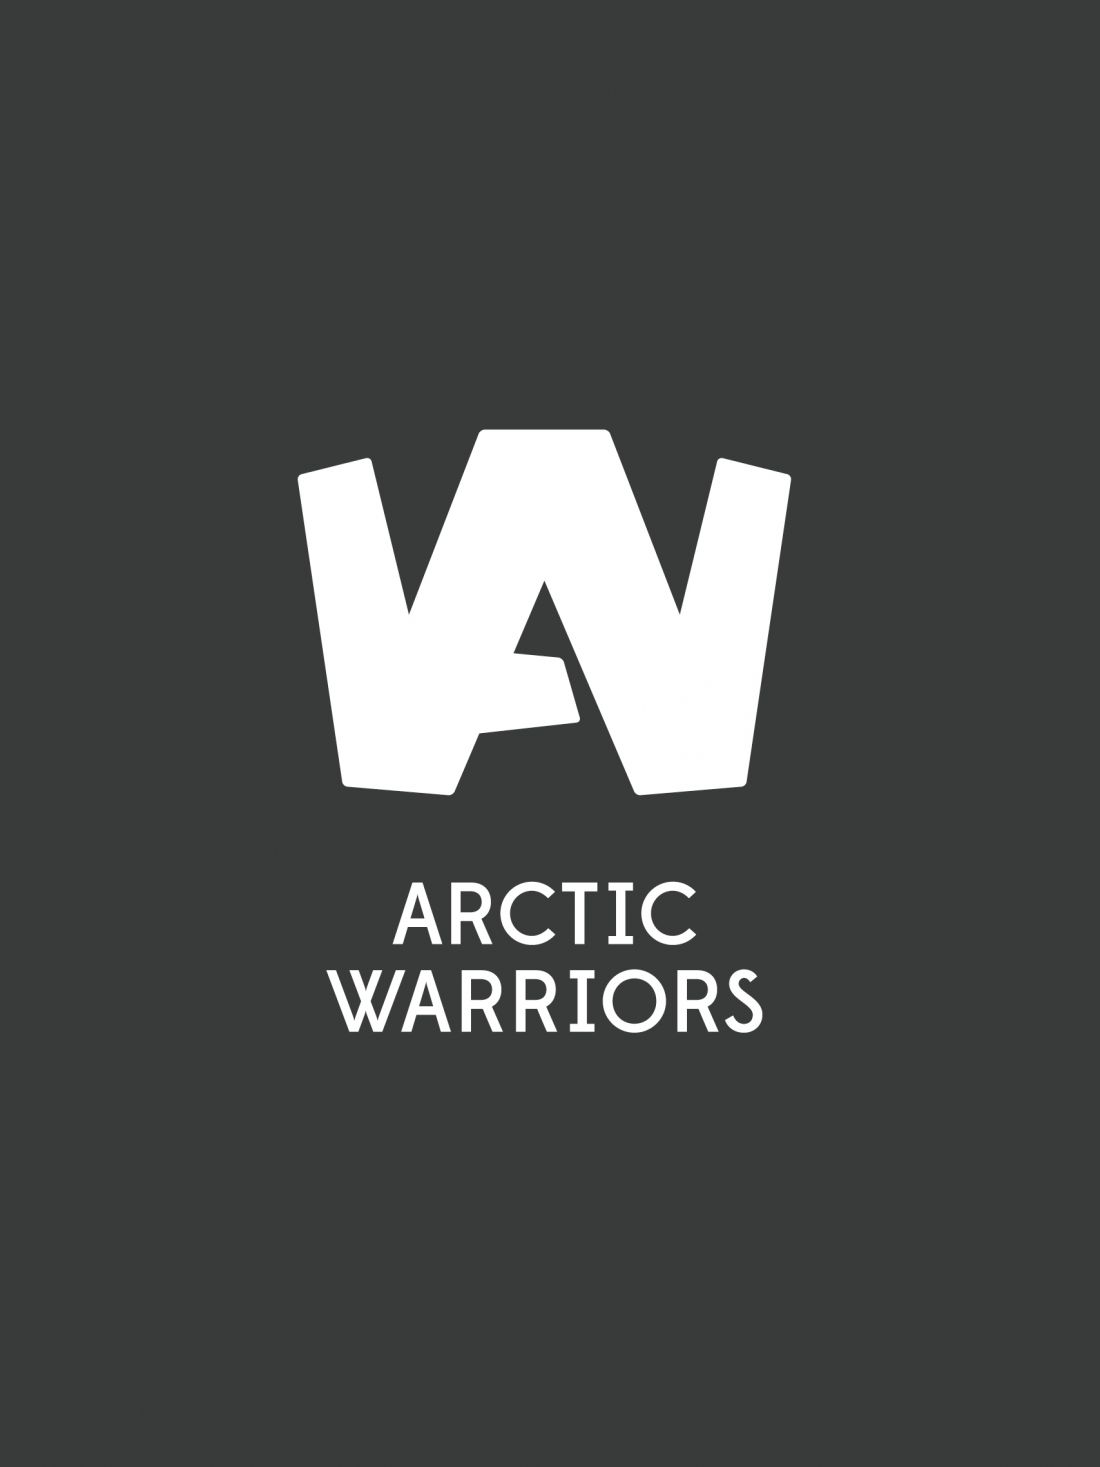 mainostoimisto_puisto_arctic_warriors.jpg